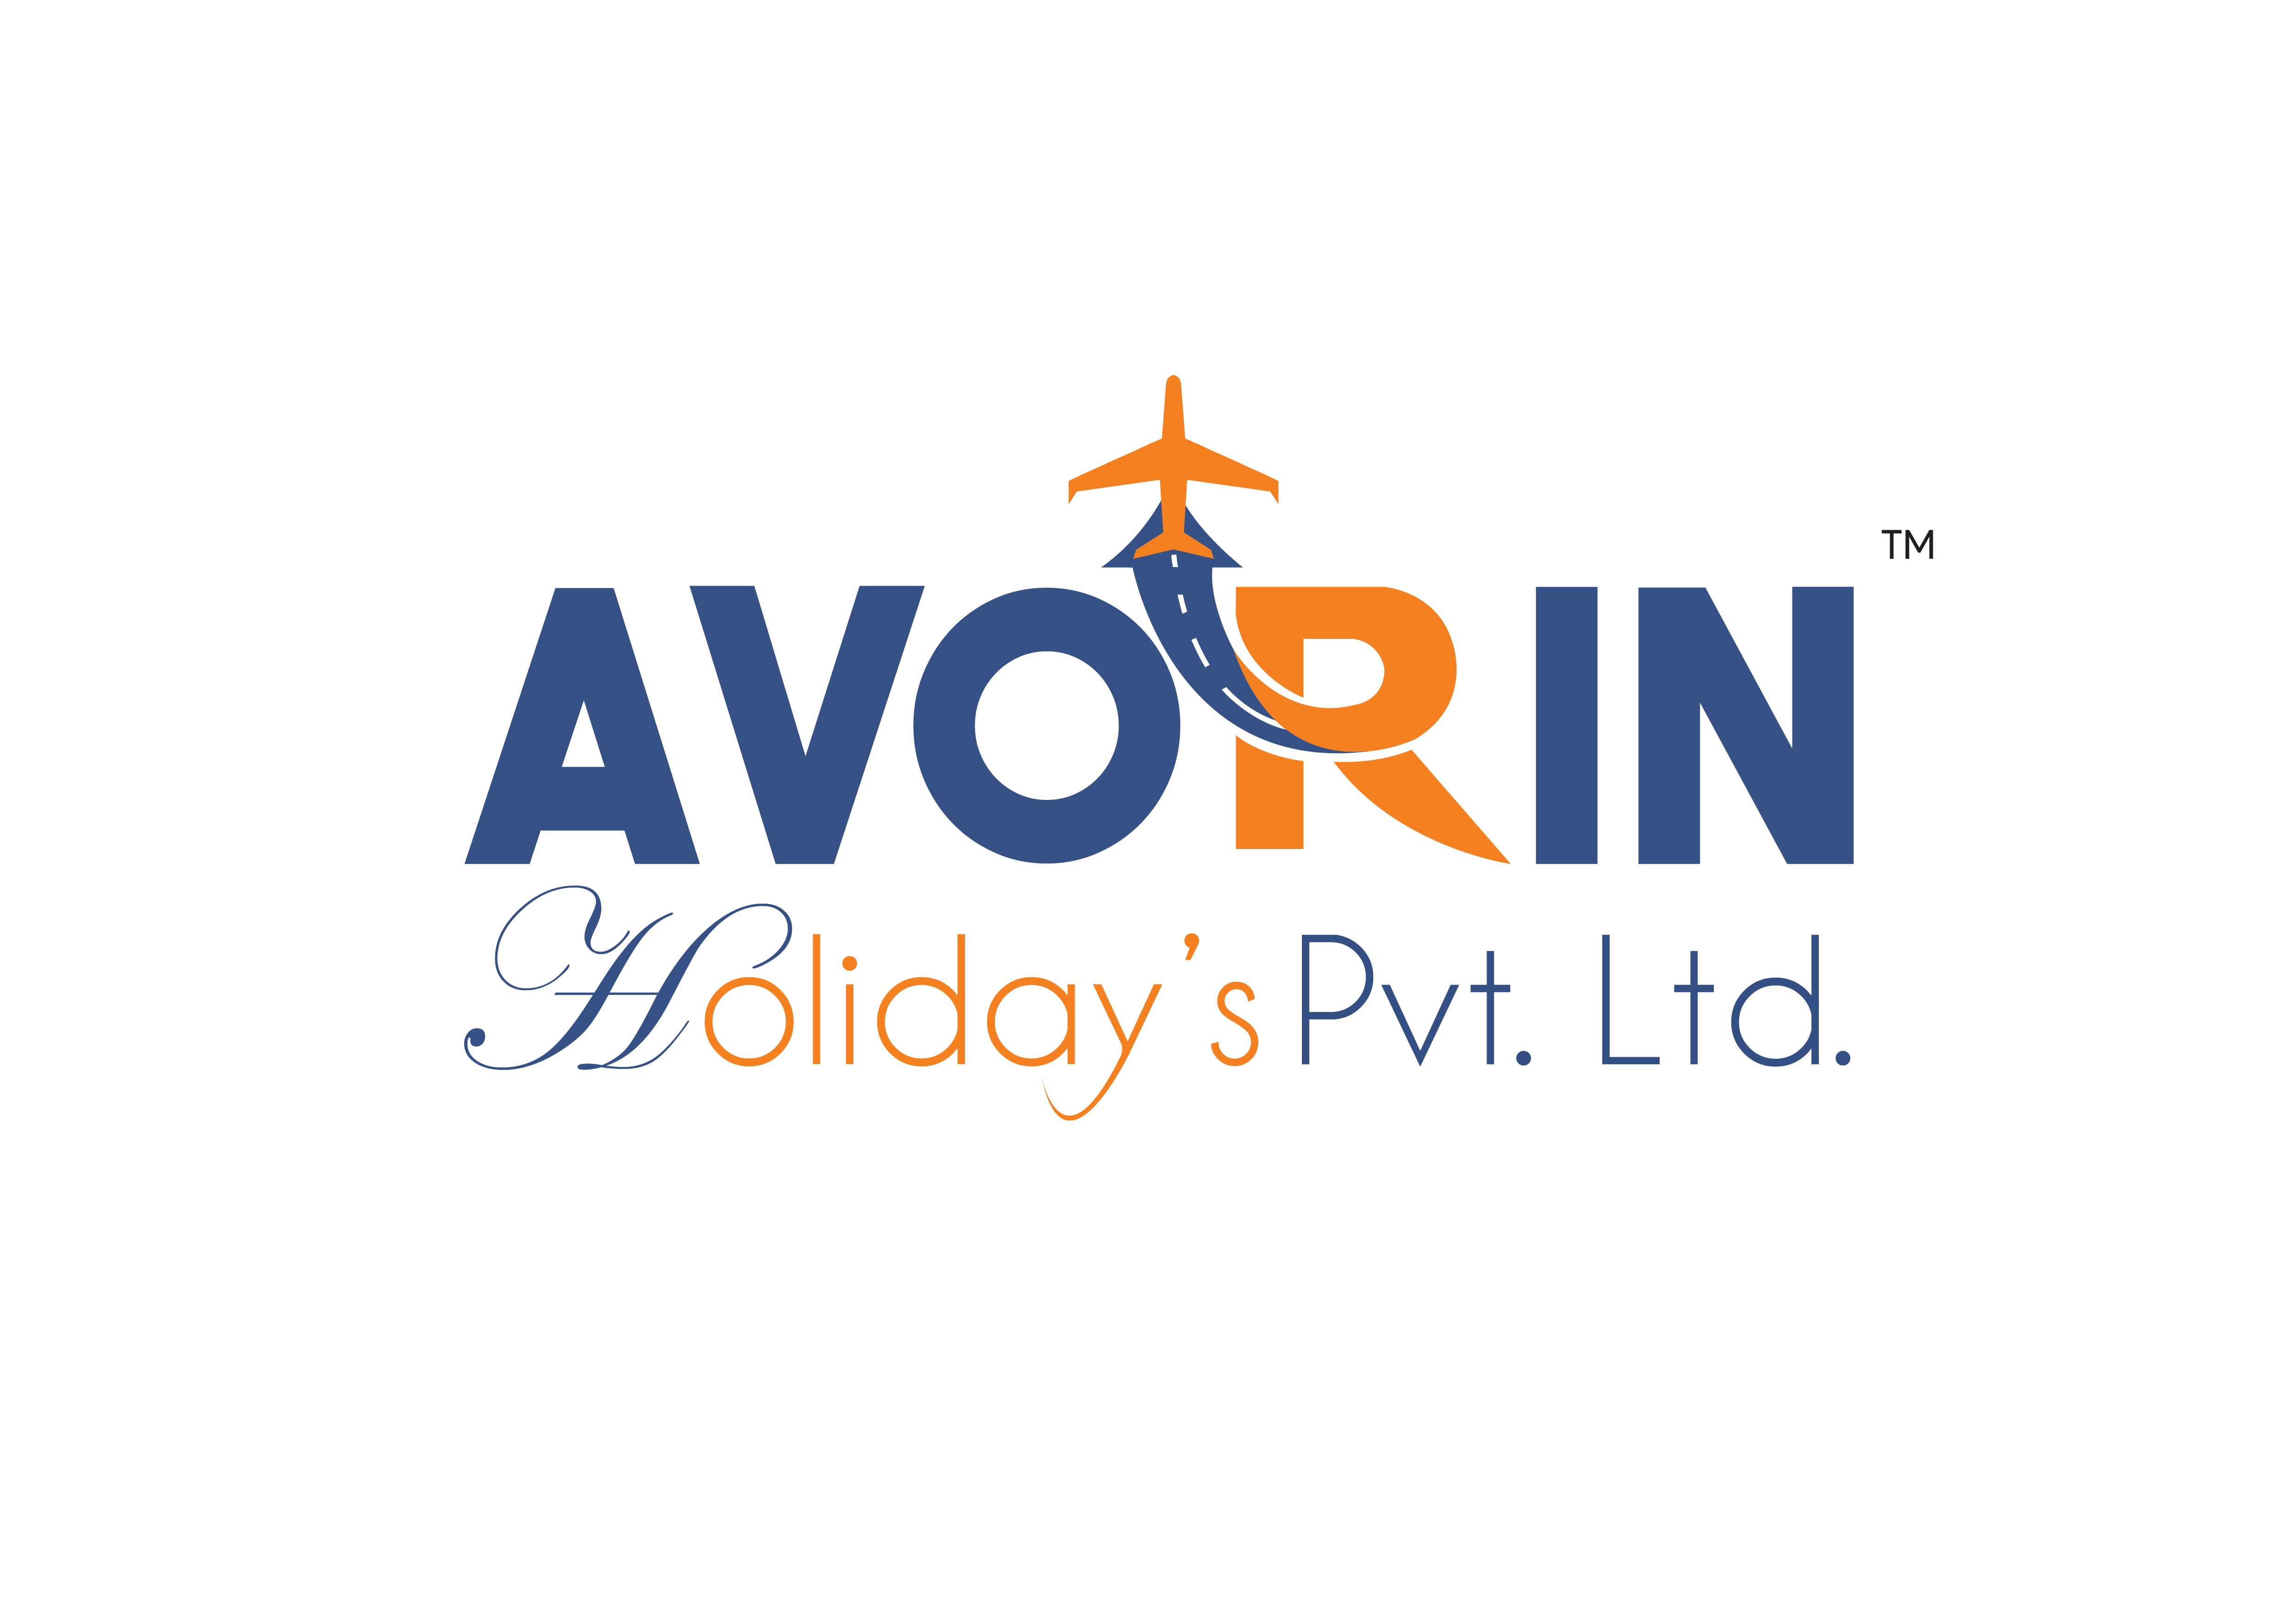 Avorin Holidays Pvt Ltd